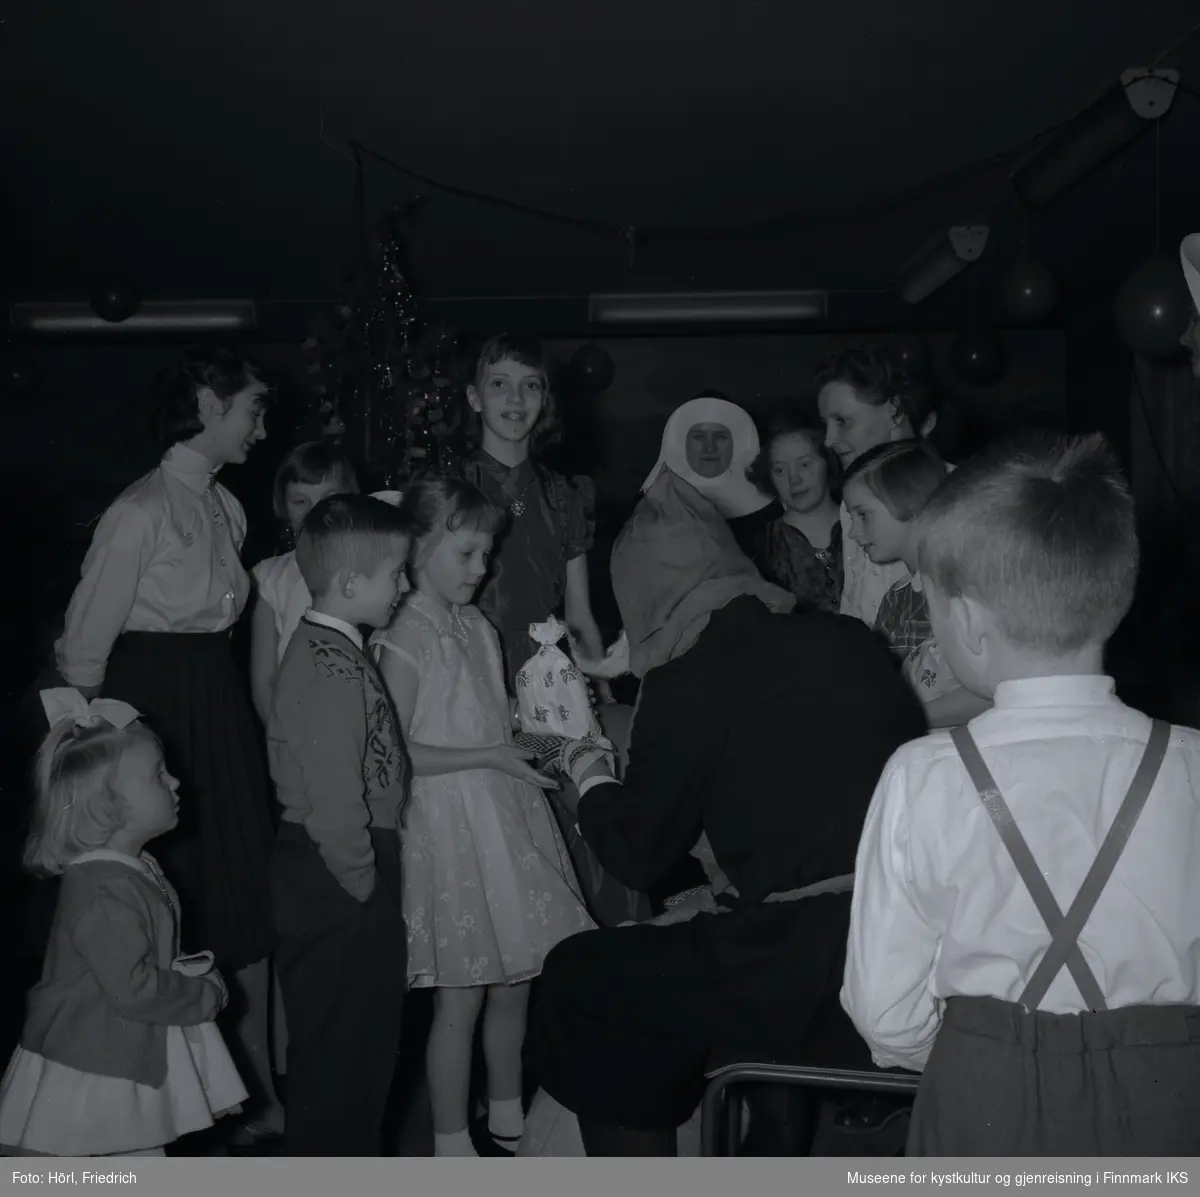 Barn og kvinner omringer julenissen på juletrefesten i den katolske menigheten i Hammerfest i 1957. Julenissen overrekker en gave til en jente. Hun er festlig kledd i en fin kjole og pensko. Ved siden av henne står det en gutt som er svært opprømt. Bak henne ser man en eldre jente som smiler glad til fotografen. Jenta nederst til venstre i bildet er Wenche Rose Trondsen. I bakgrunnen ser man juletreet. Girlander med ballonger henger fra taket.